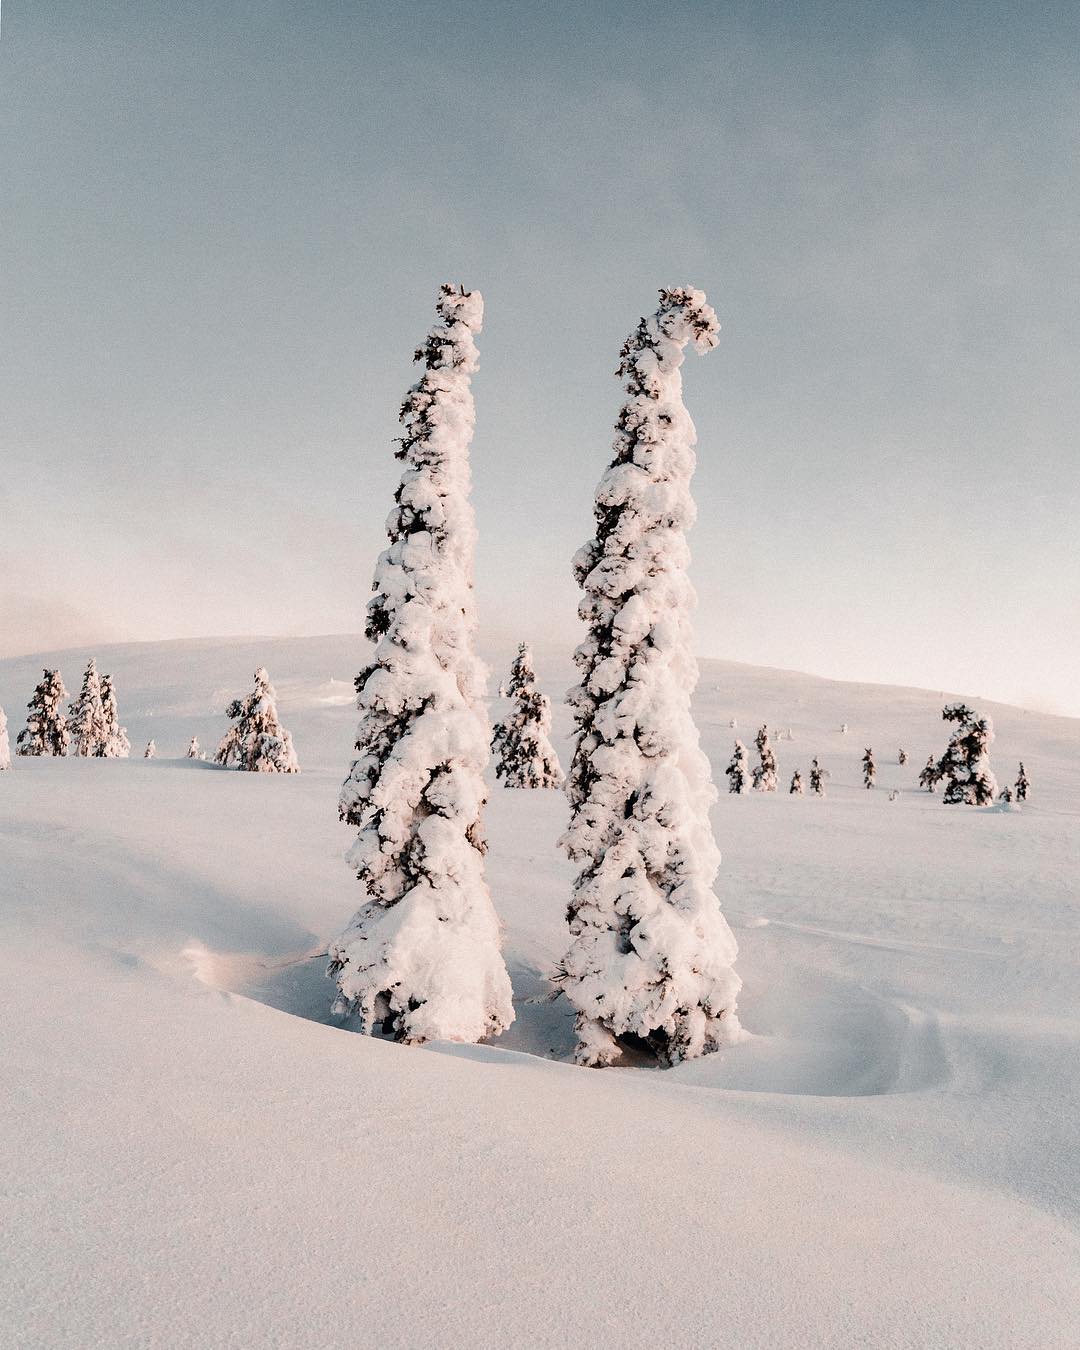 Потрясающие пейзажи Финляндии на снимках Анны-Элины Лахти